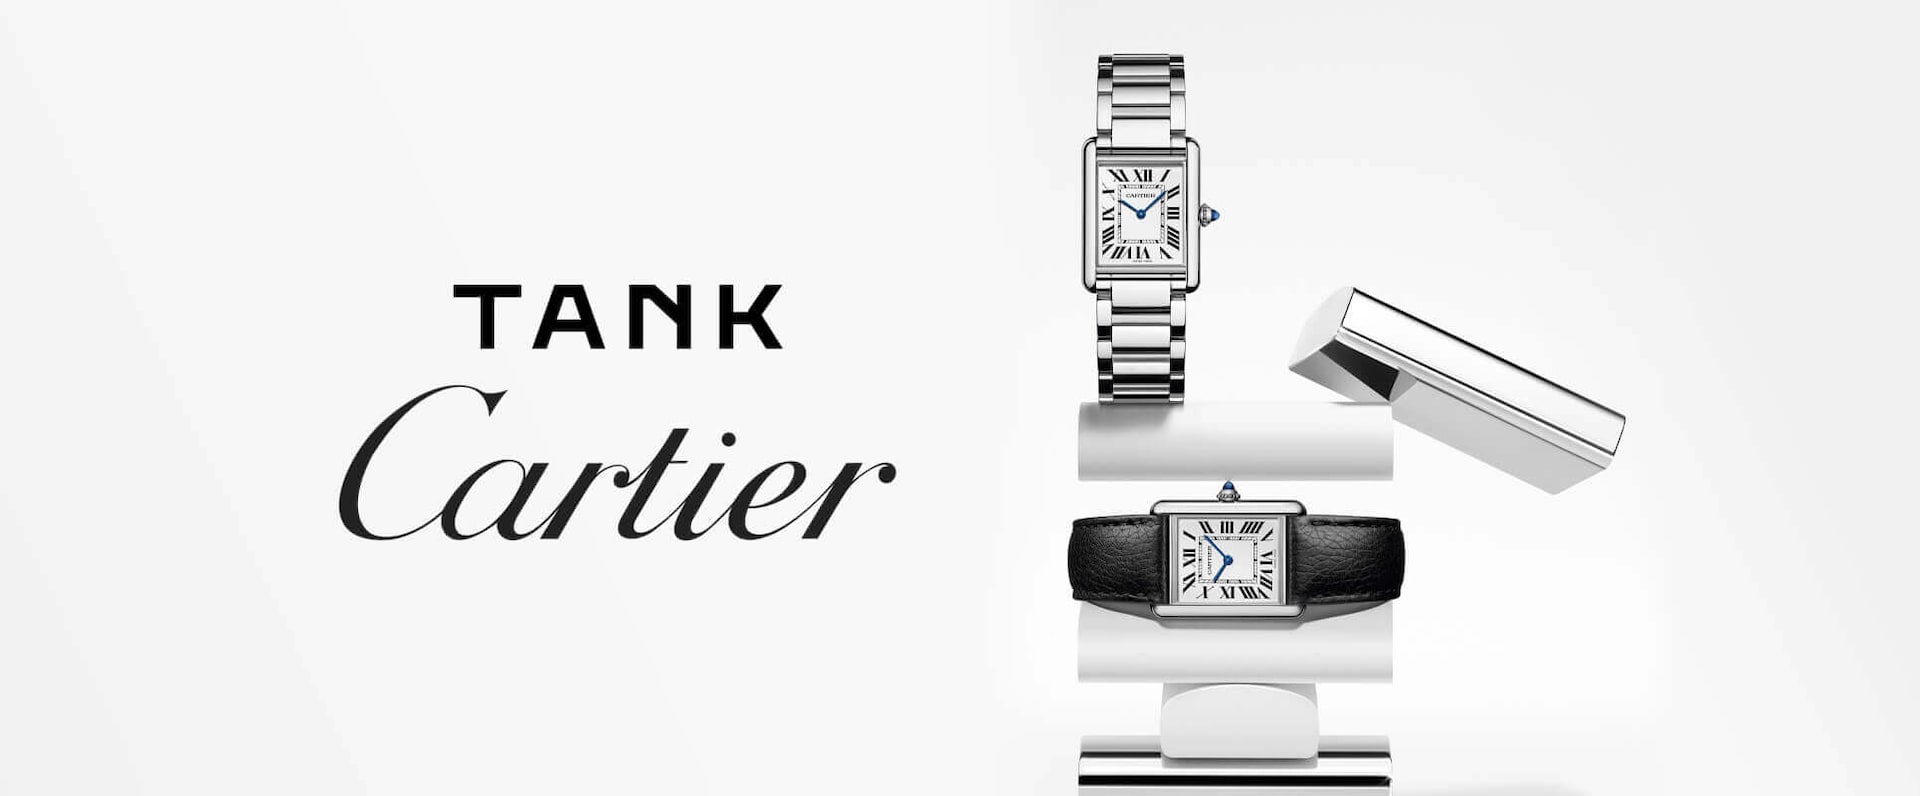 Tank-Cartier-Hero-DT.jpg